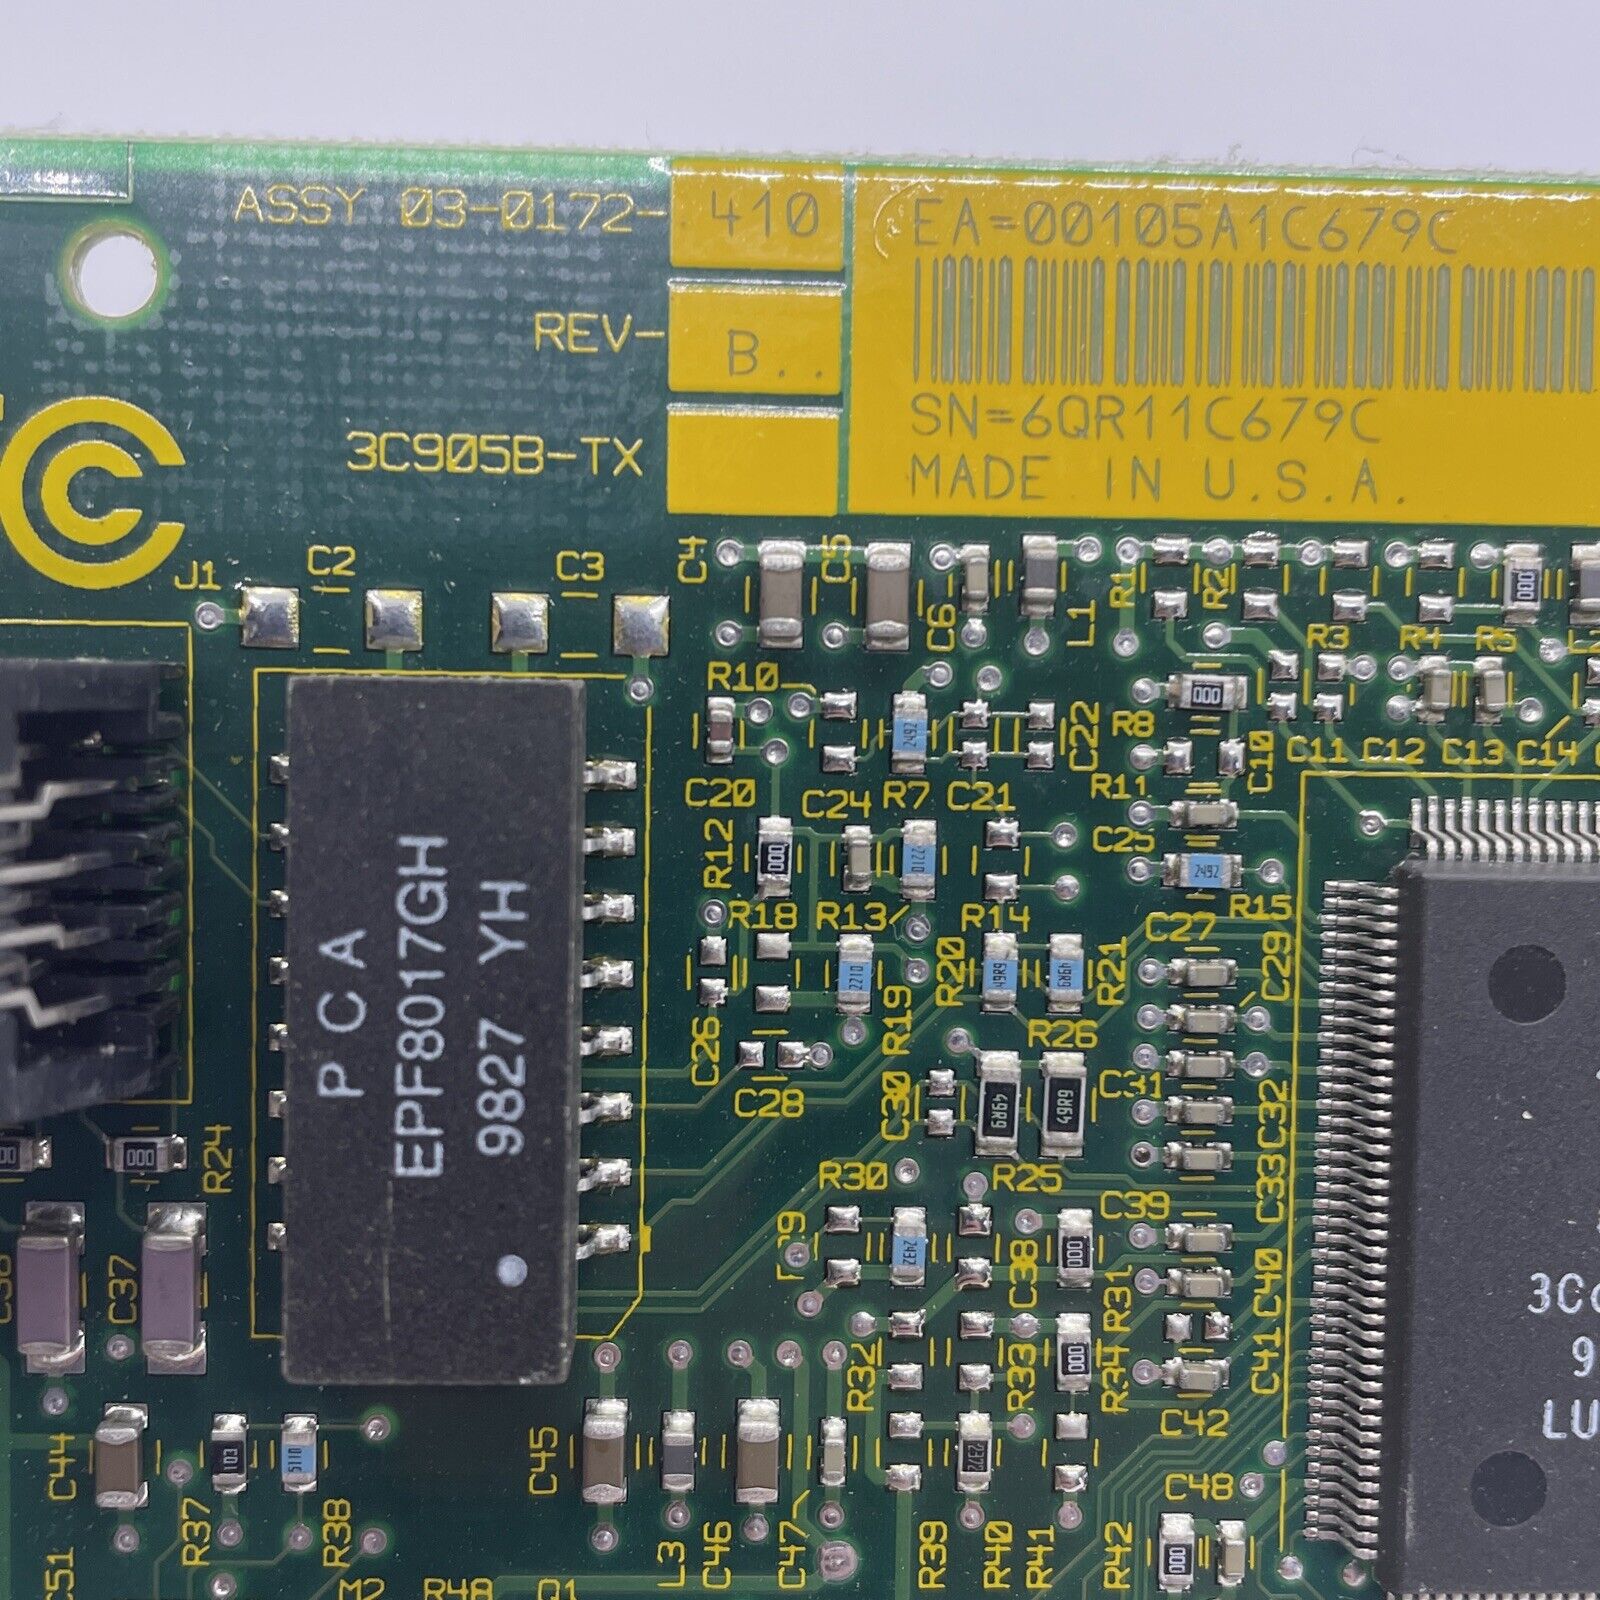 3Com PCI Ethernet LAN Card 3C905B-TX Parallel Tasking II 40-0483 